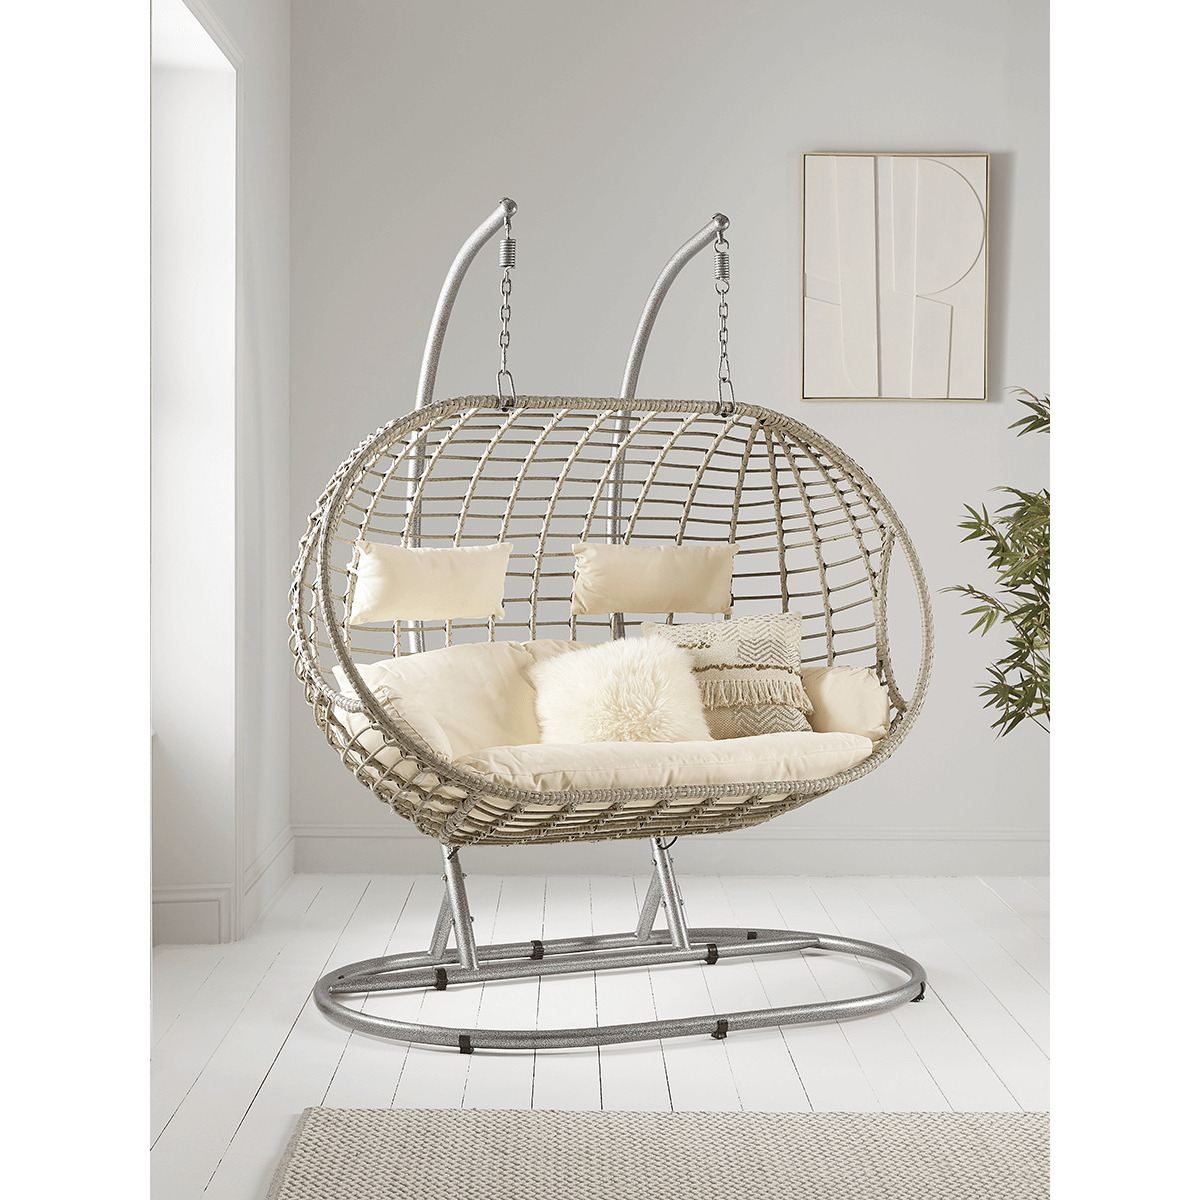 Indoor Outdoor Double Hanging Chair - Grey - image 1